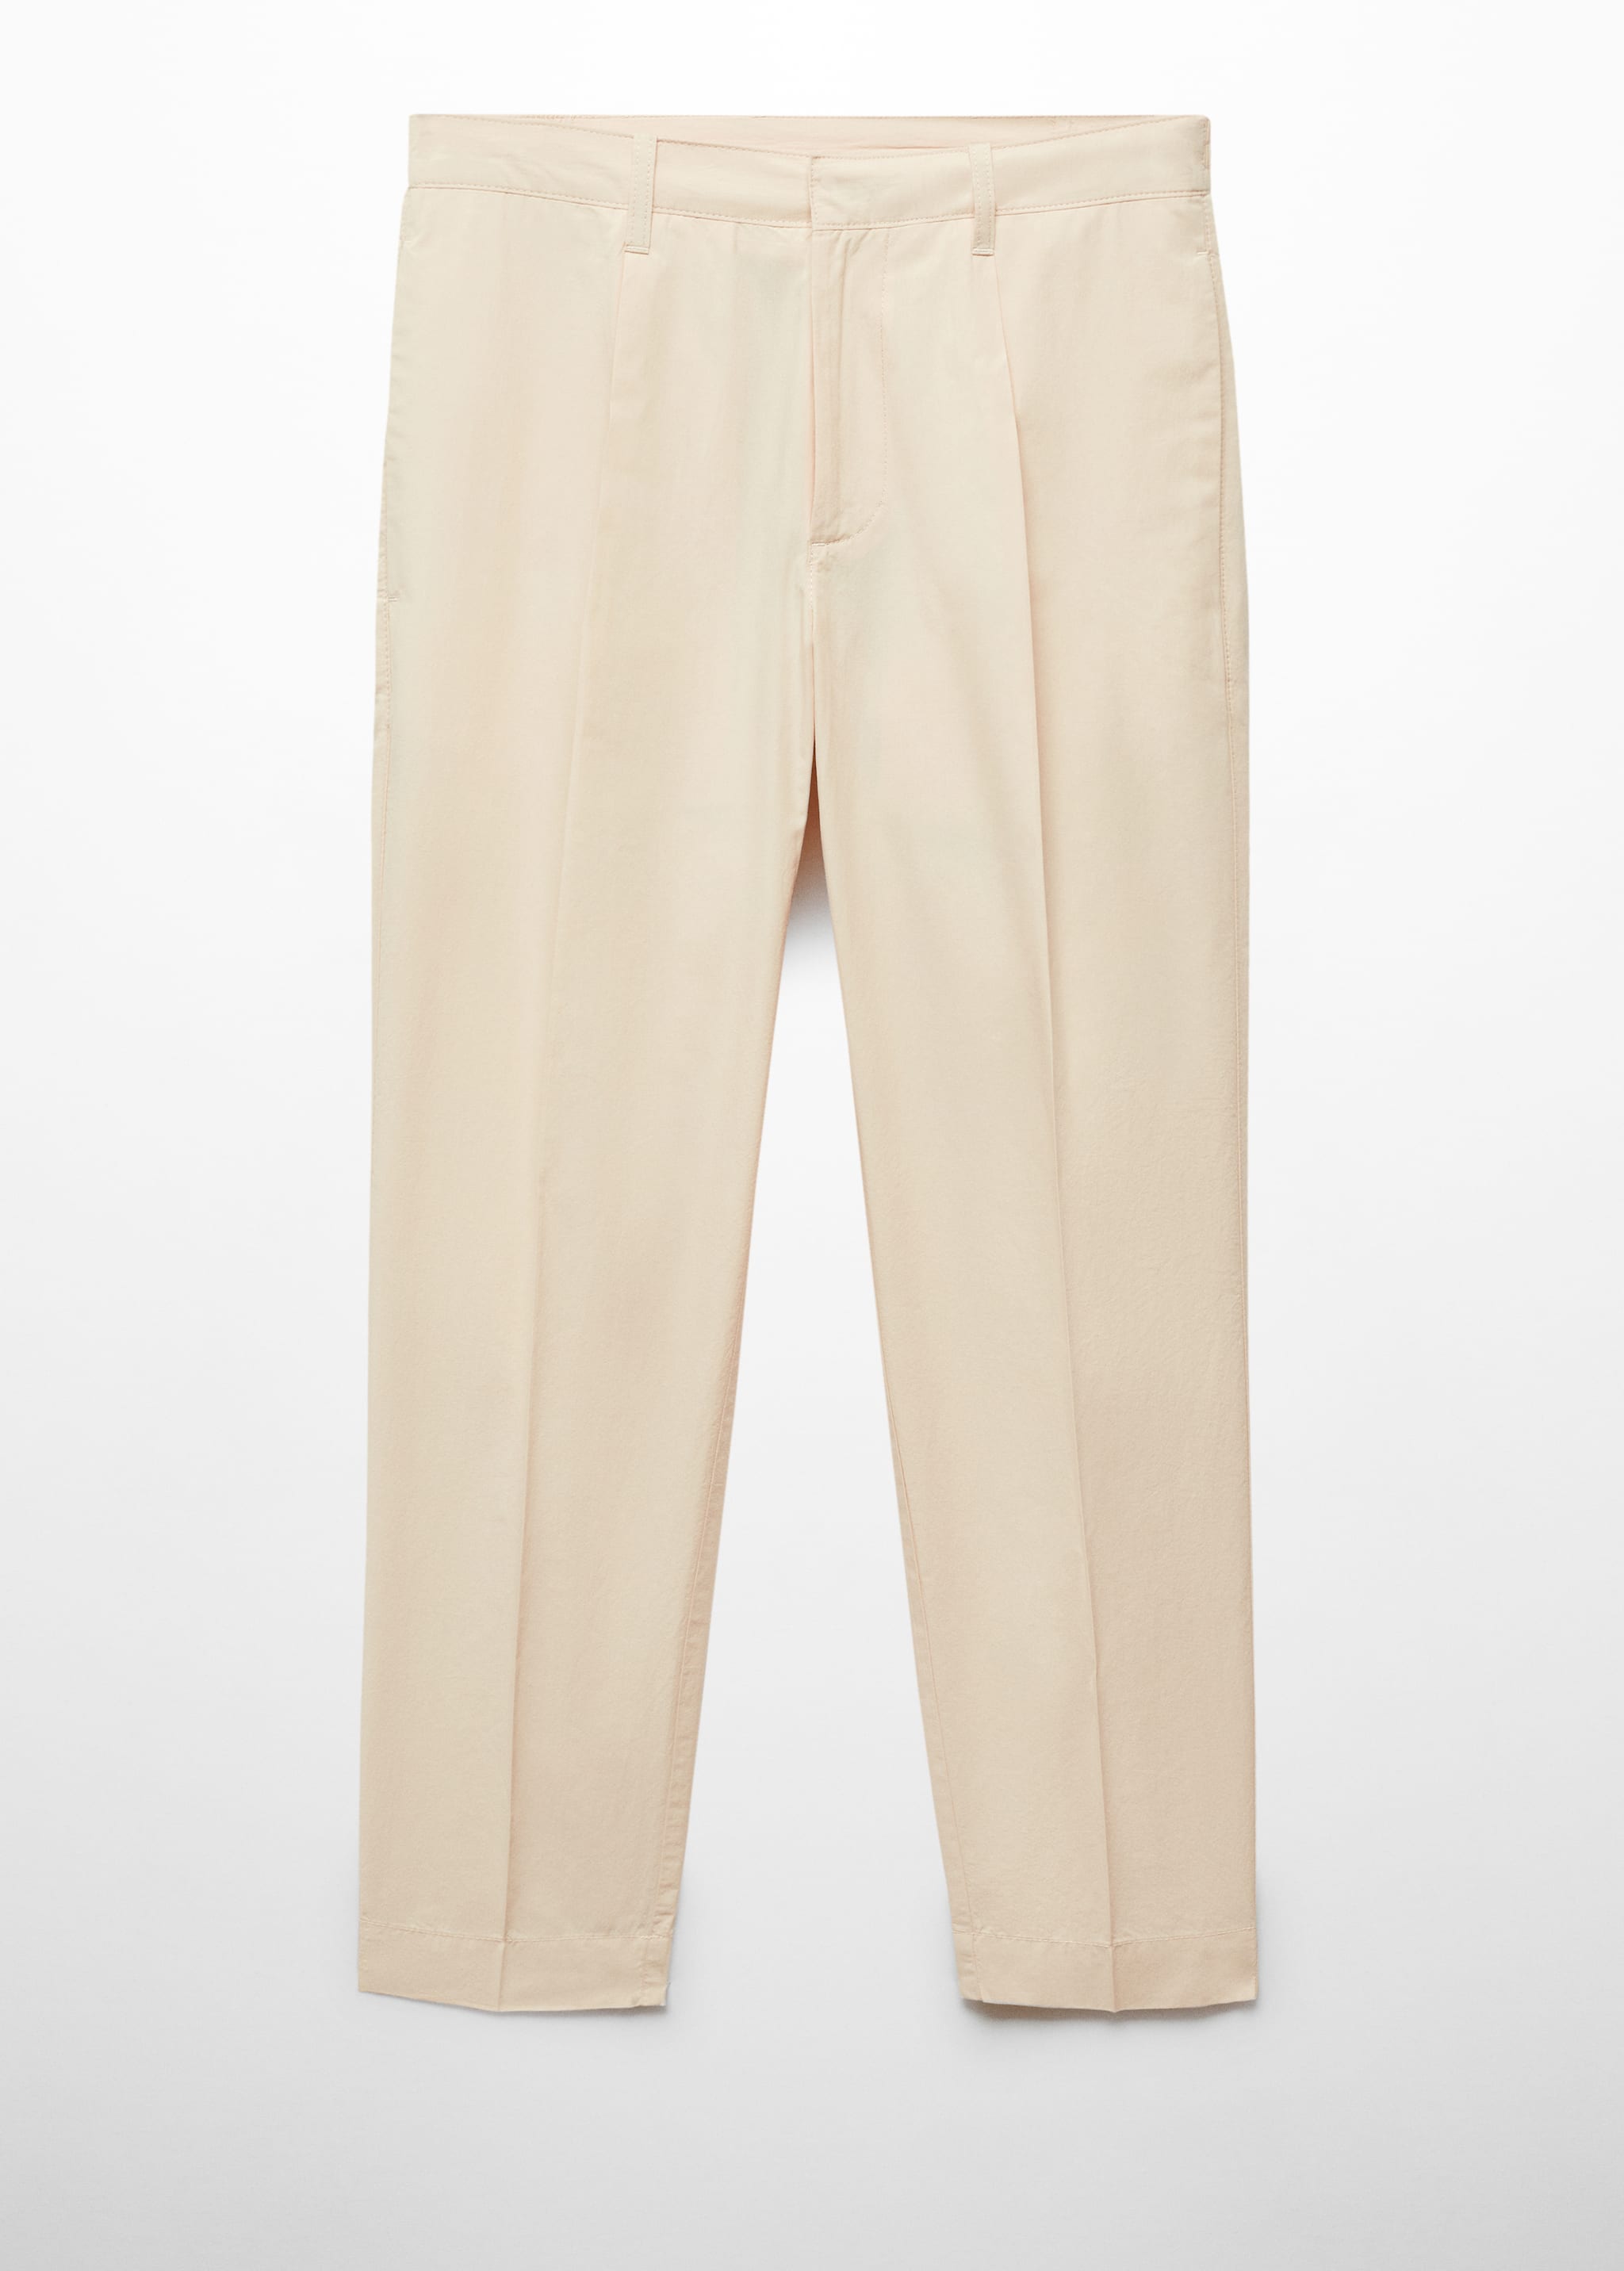 Pantalón 100% algodón slim fit - Artículo sin modelo